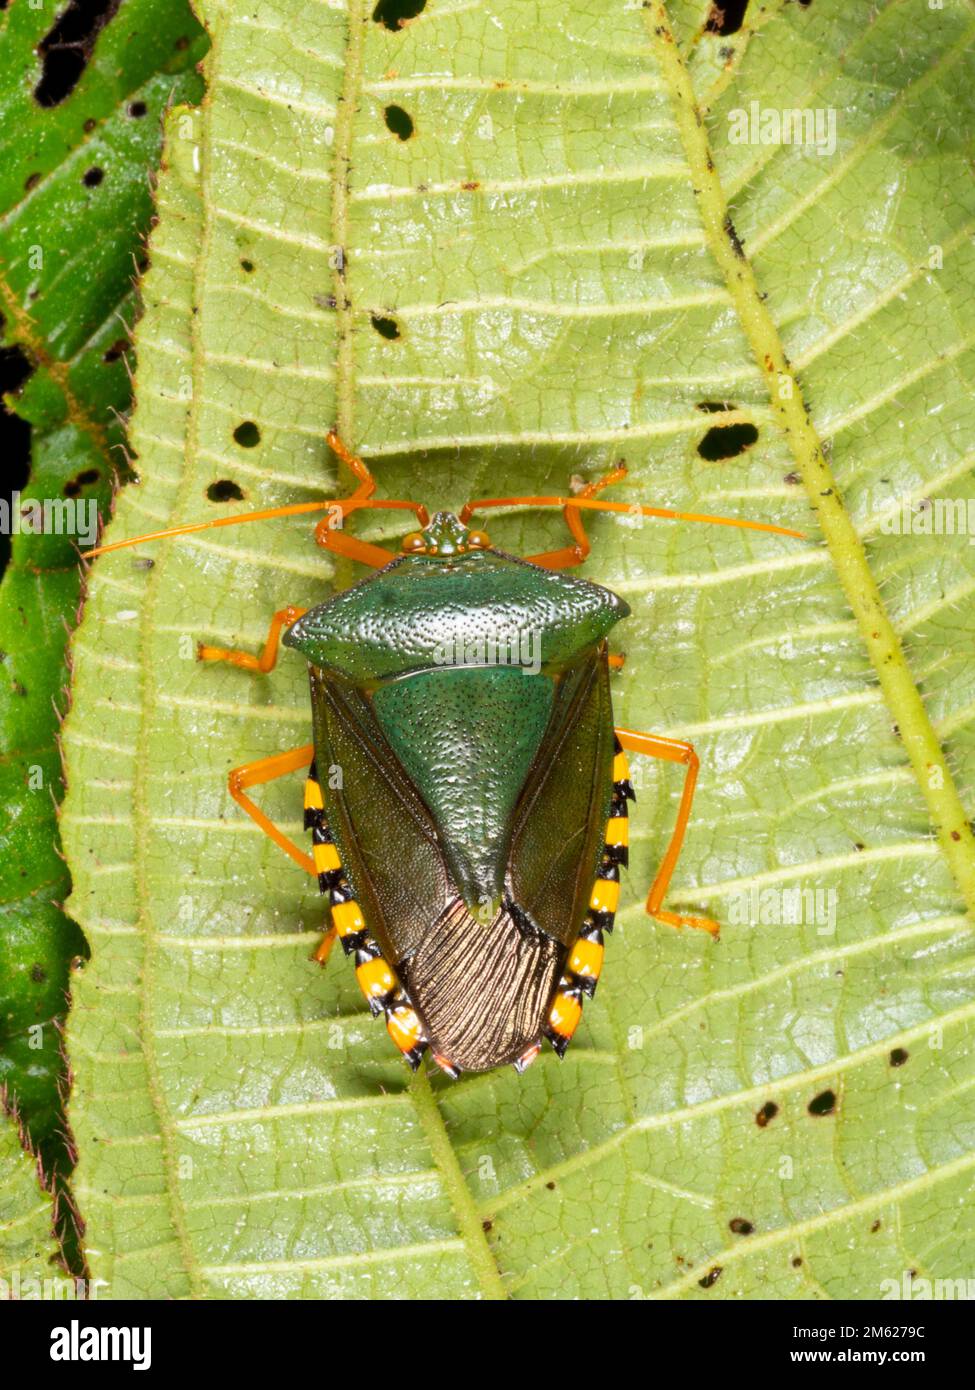 Apestoso Bug (Familia Pentatomidae) en la parte inferior de una hoja de sotobosque, provincia de Orellana, Ecuador Foto de stock